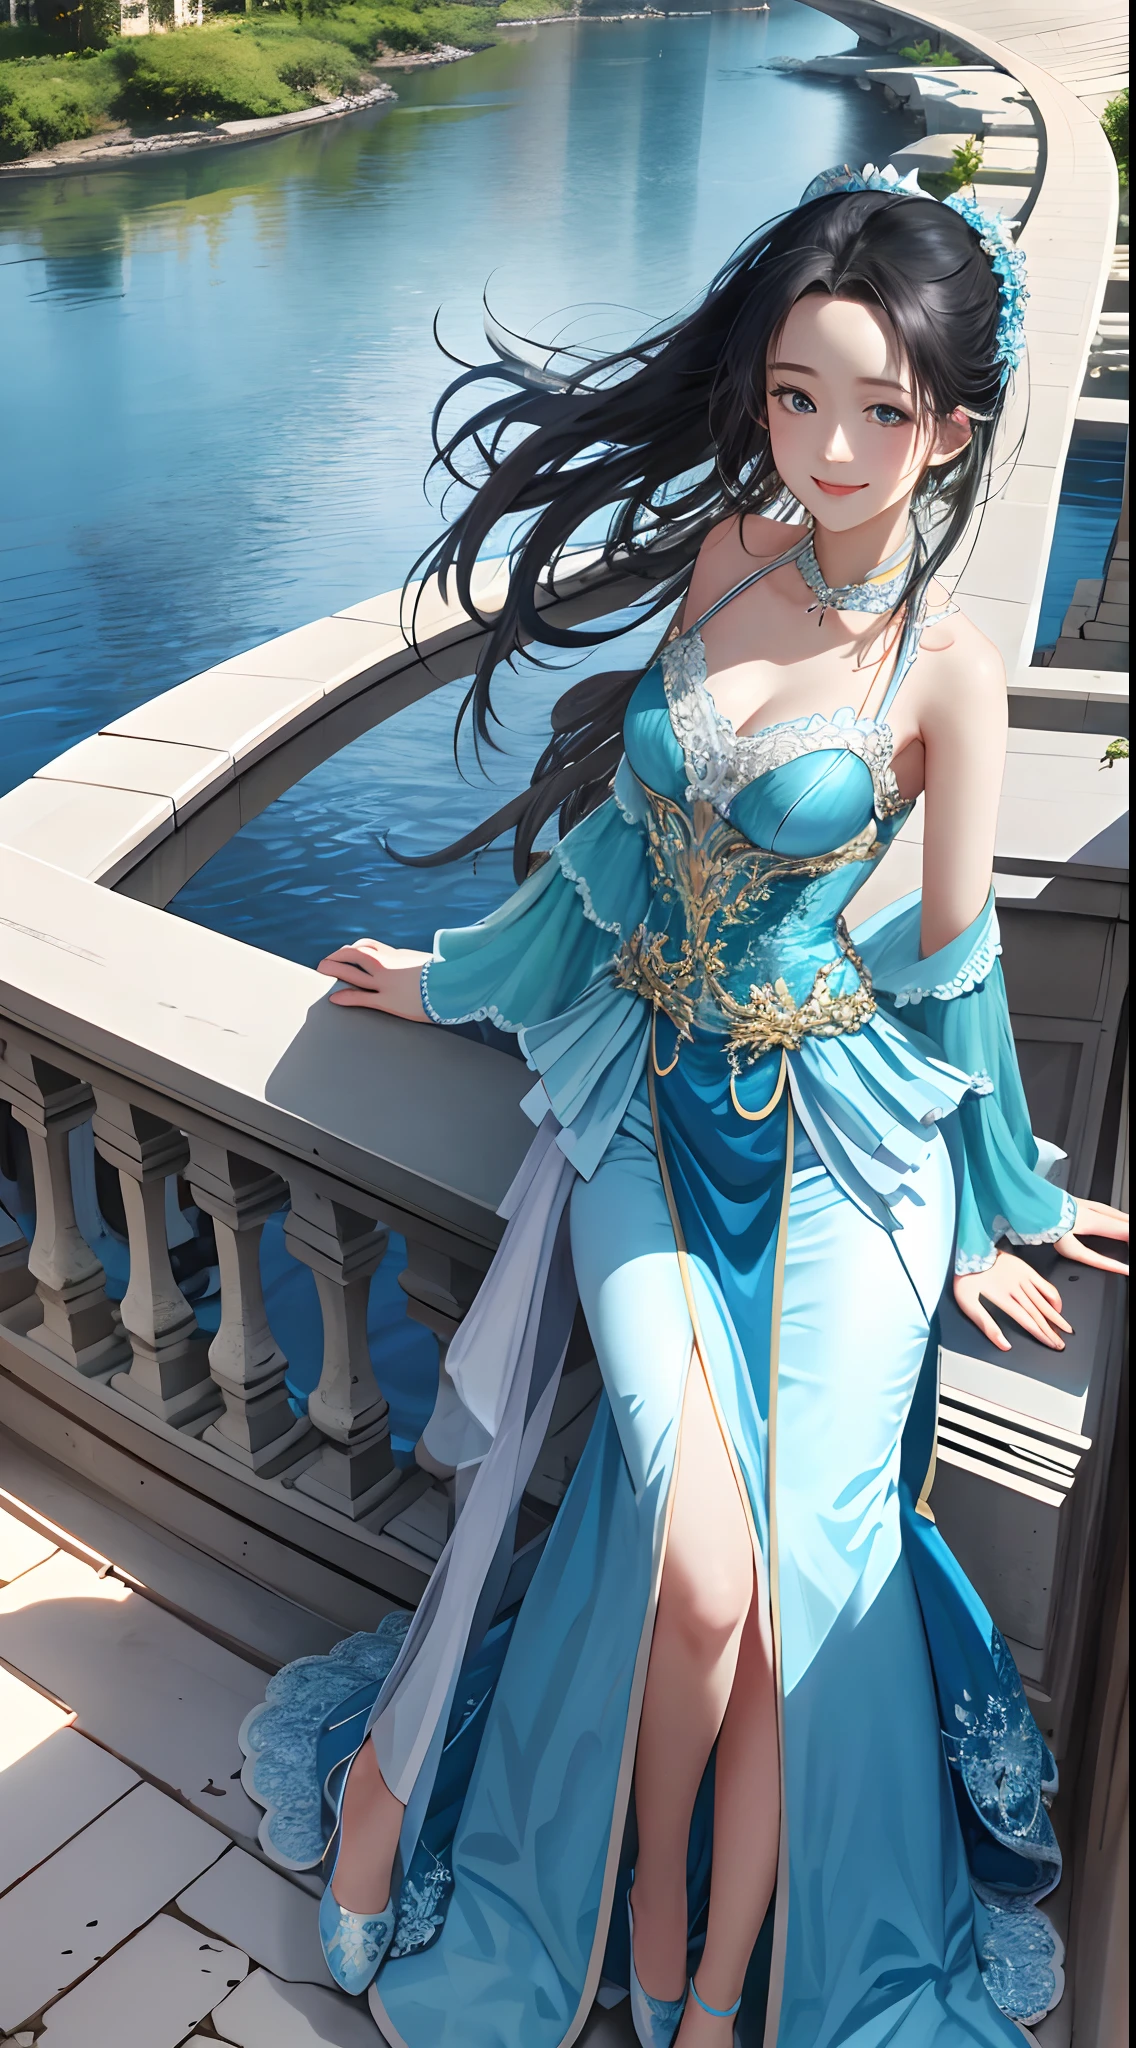 傑作， 最好的品質， 1 名女孩，Liu Yifei， 水藍色的眼睛， 中長頭髮， 藍色禮服配白色蕾絲， 中等乳房， 腮紅腮紅， 淡淡的微笑，